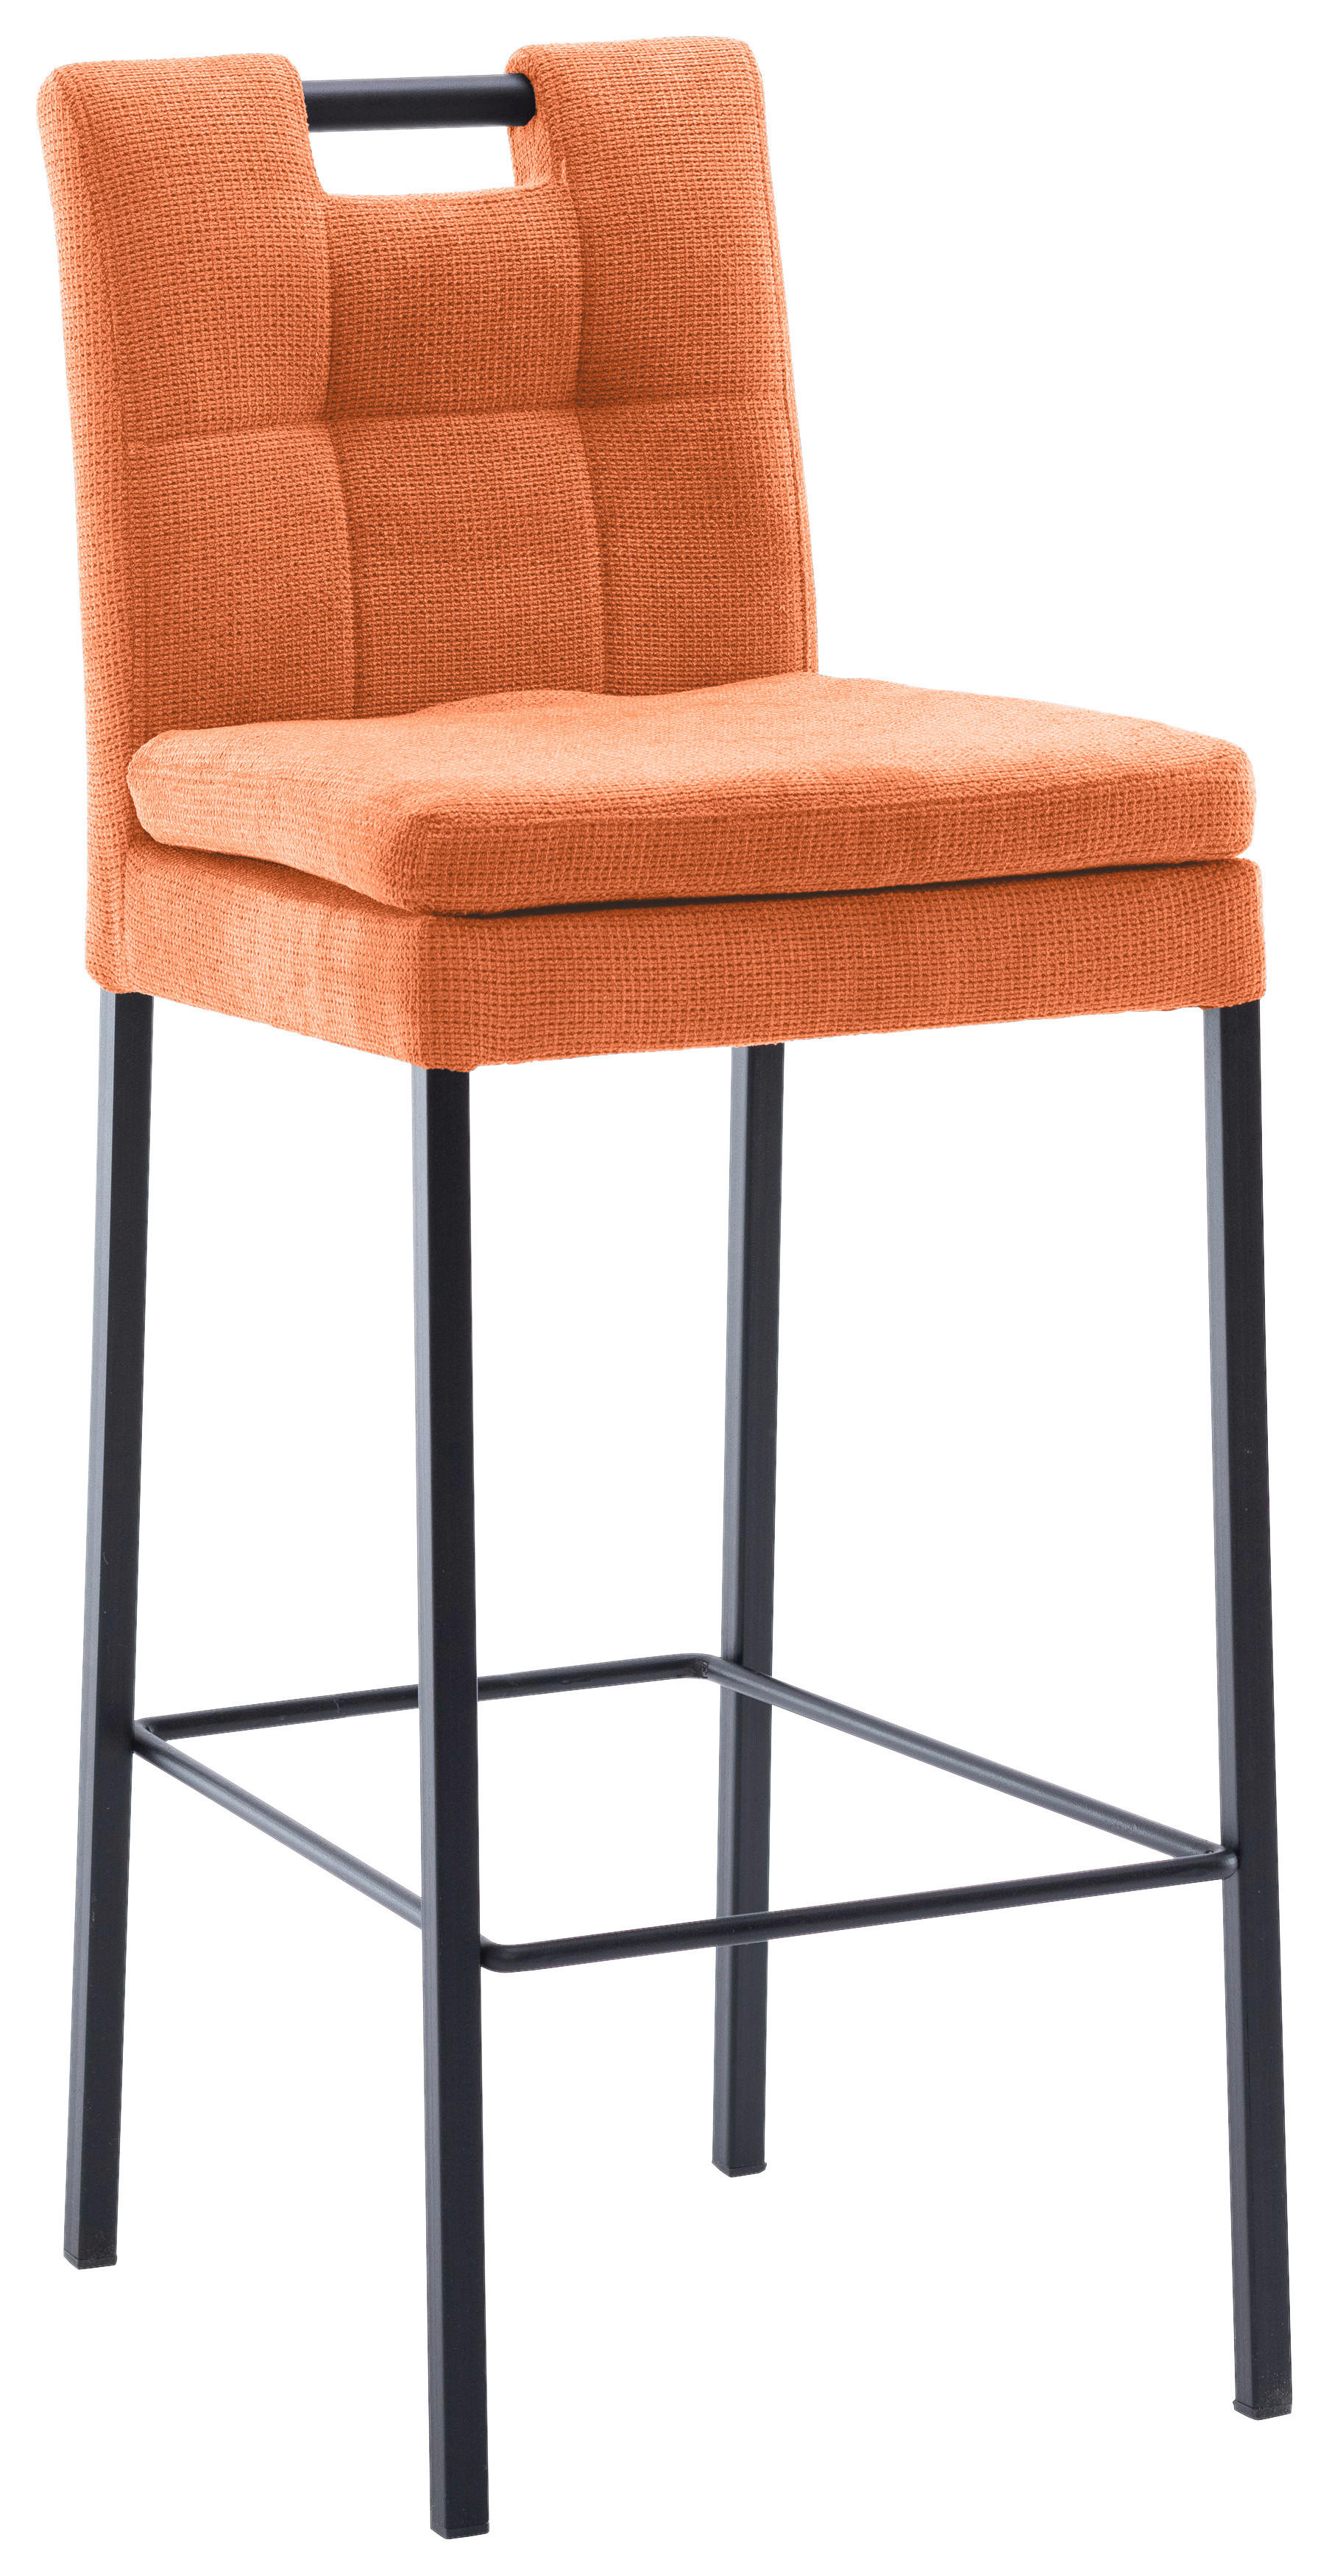 BARHOCKER Webstoff Orange, Schwarz Eisen  - Schwarz/Orange, Design, Textil/Metall (42/102/52cm) - Cantus